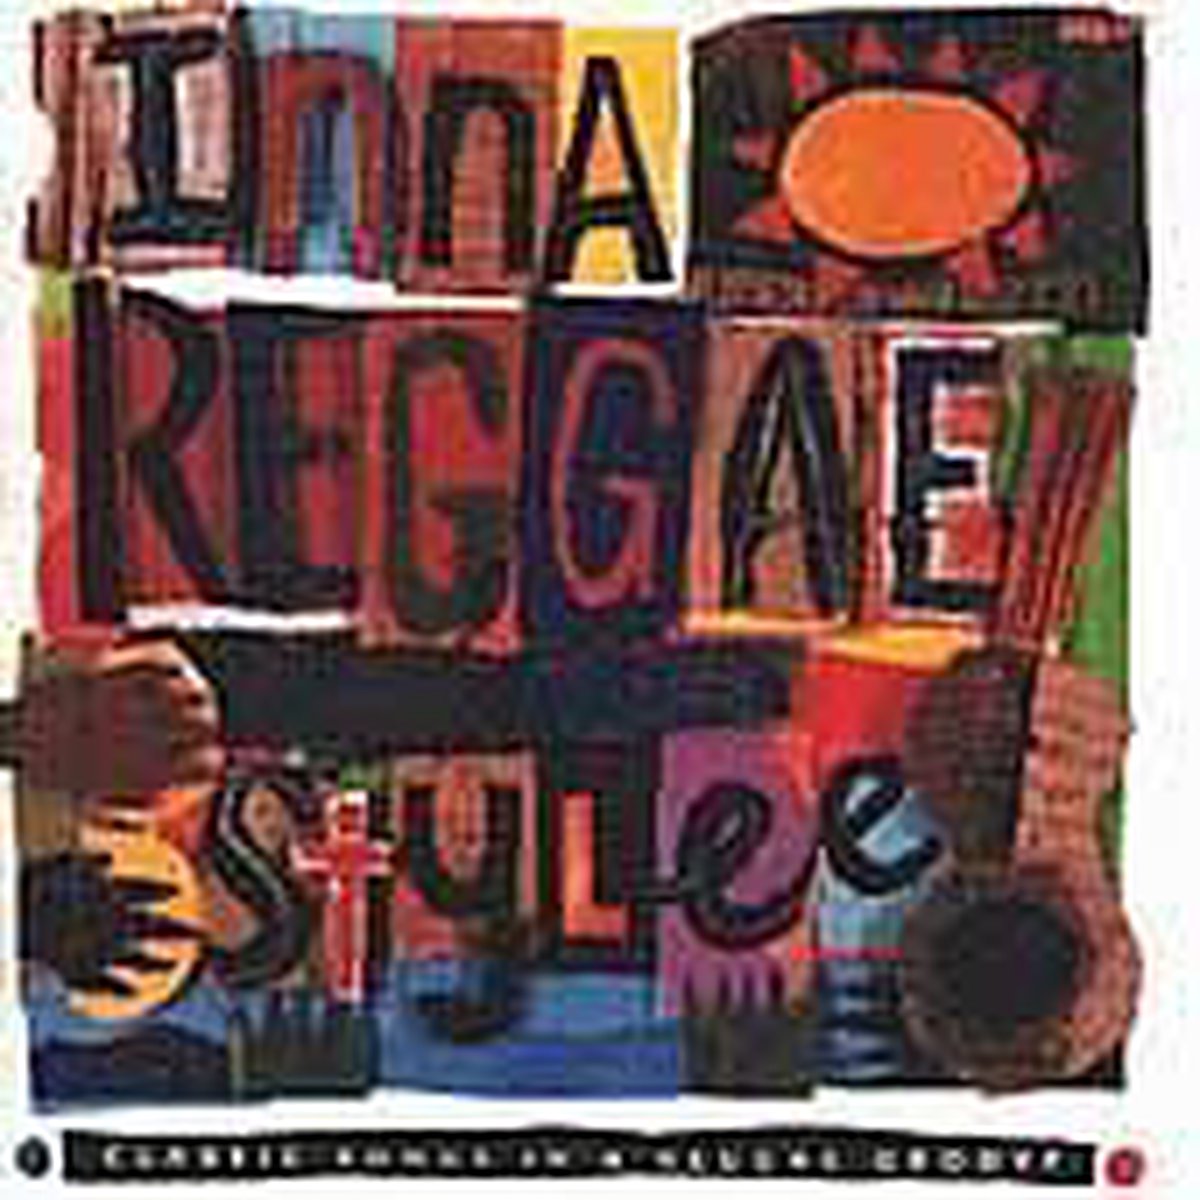 Inna Reggae Stylee: Classic Songs in a Reggae Groove - various artists